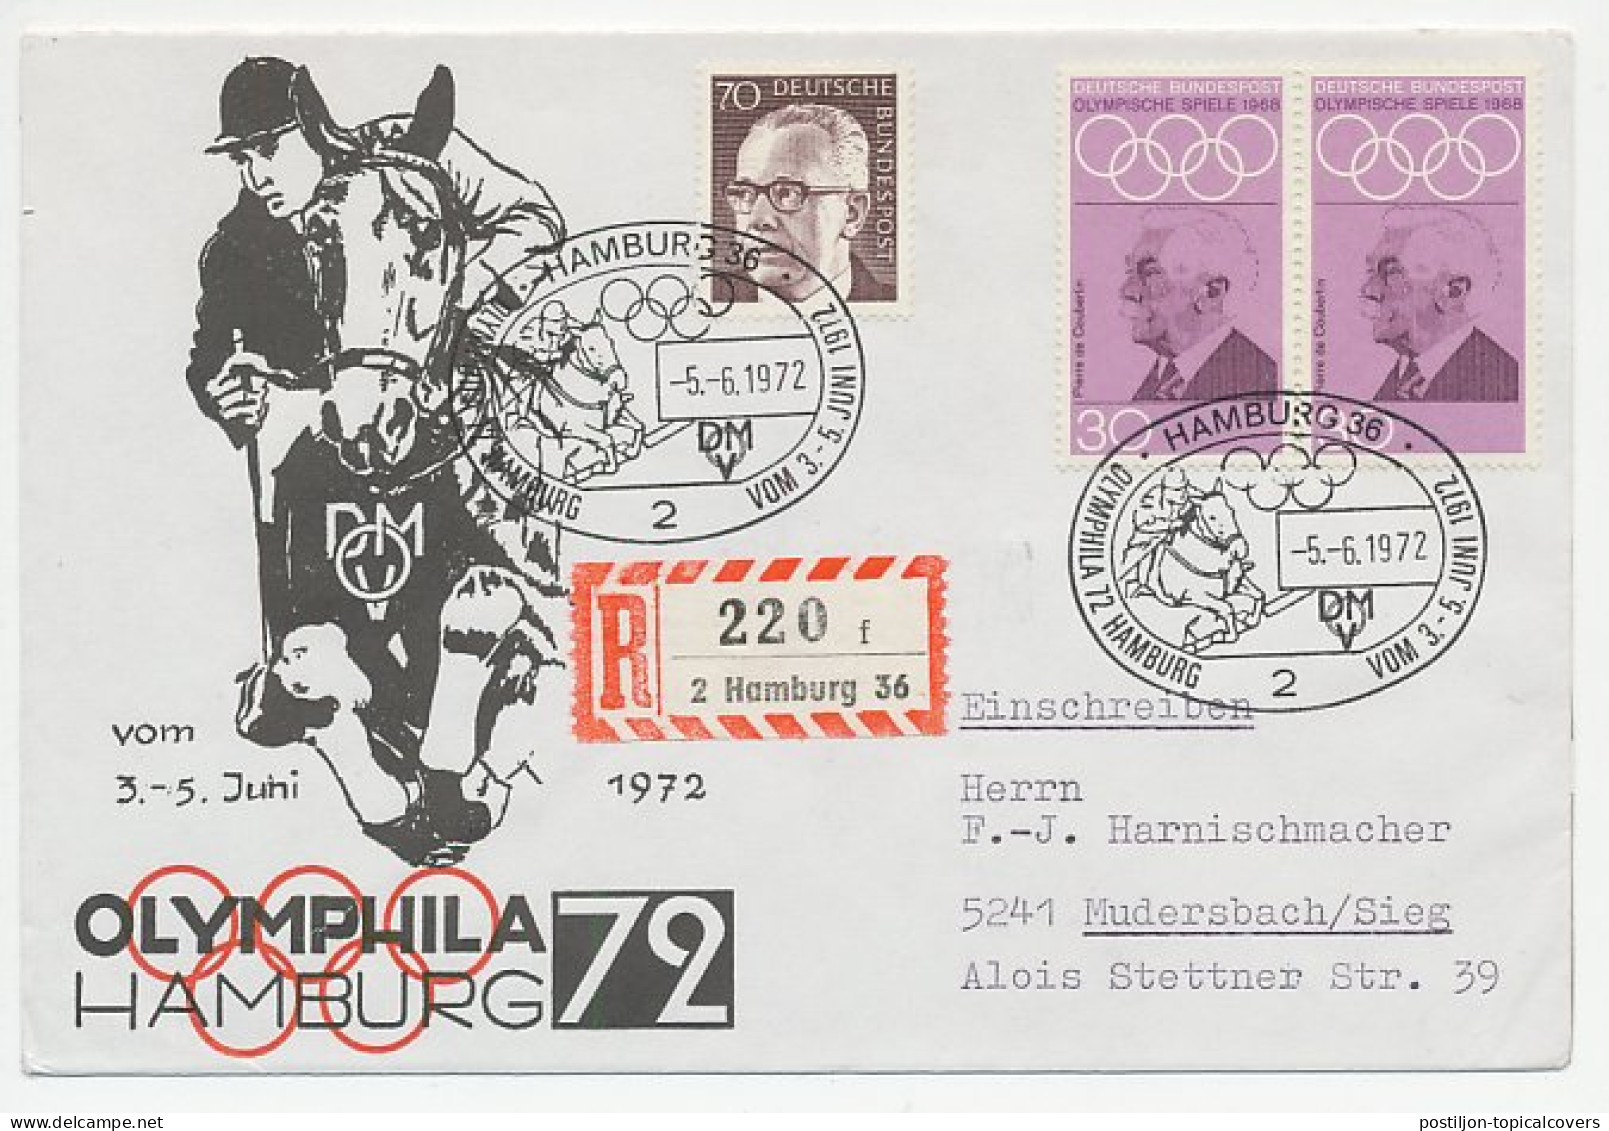 Registered Cover / Postmark Germany 1972 Horse Jumping - Olymphila Hamburg - Hippisme